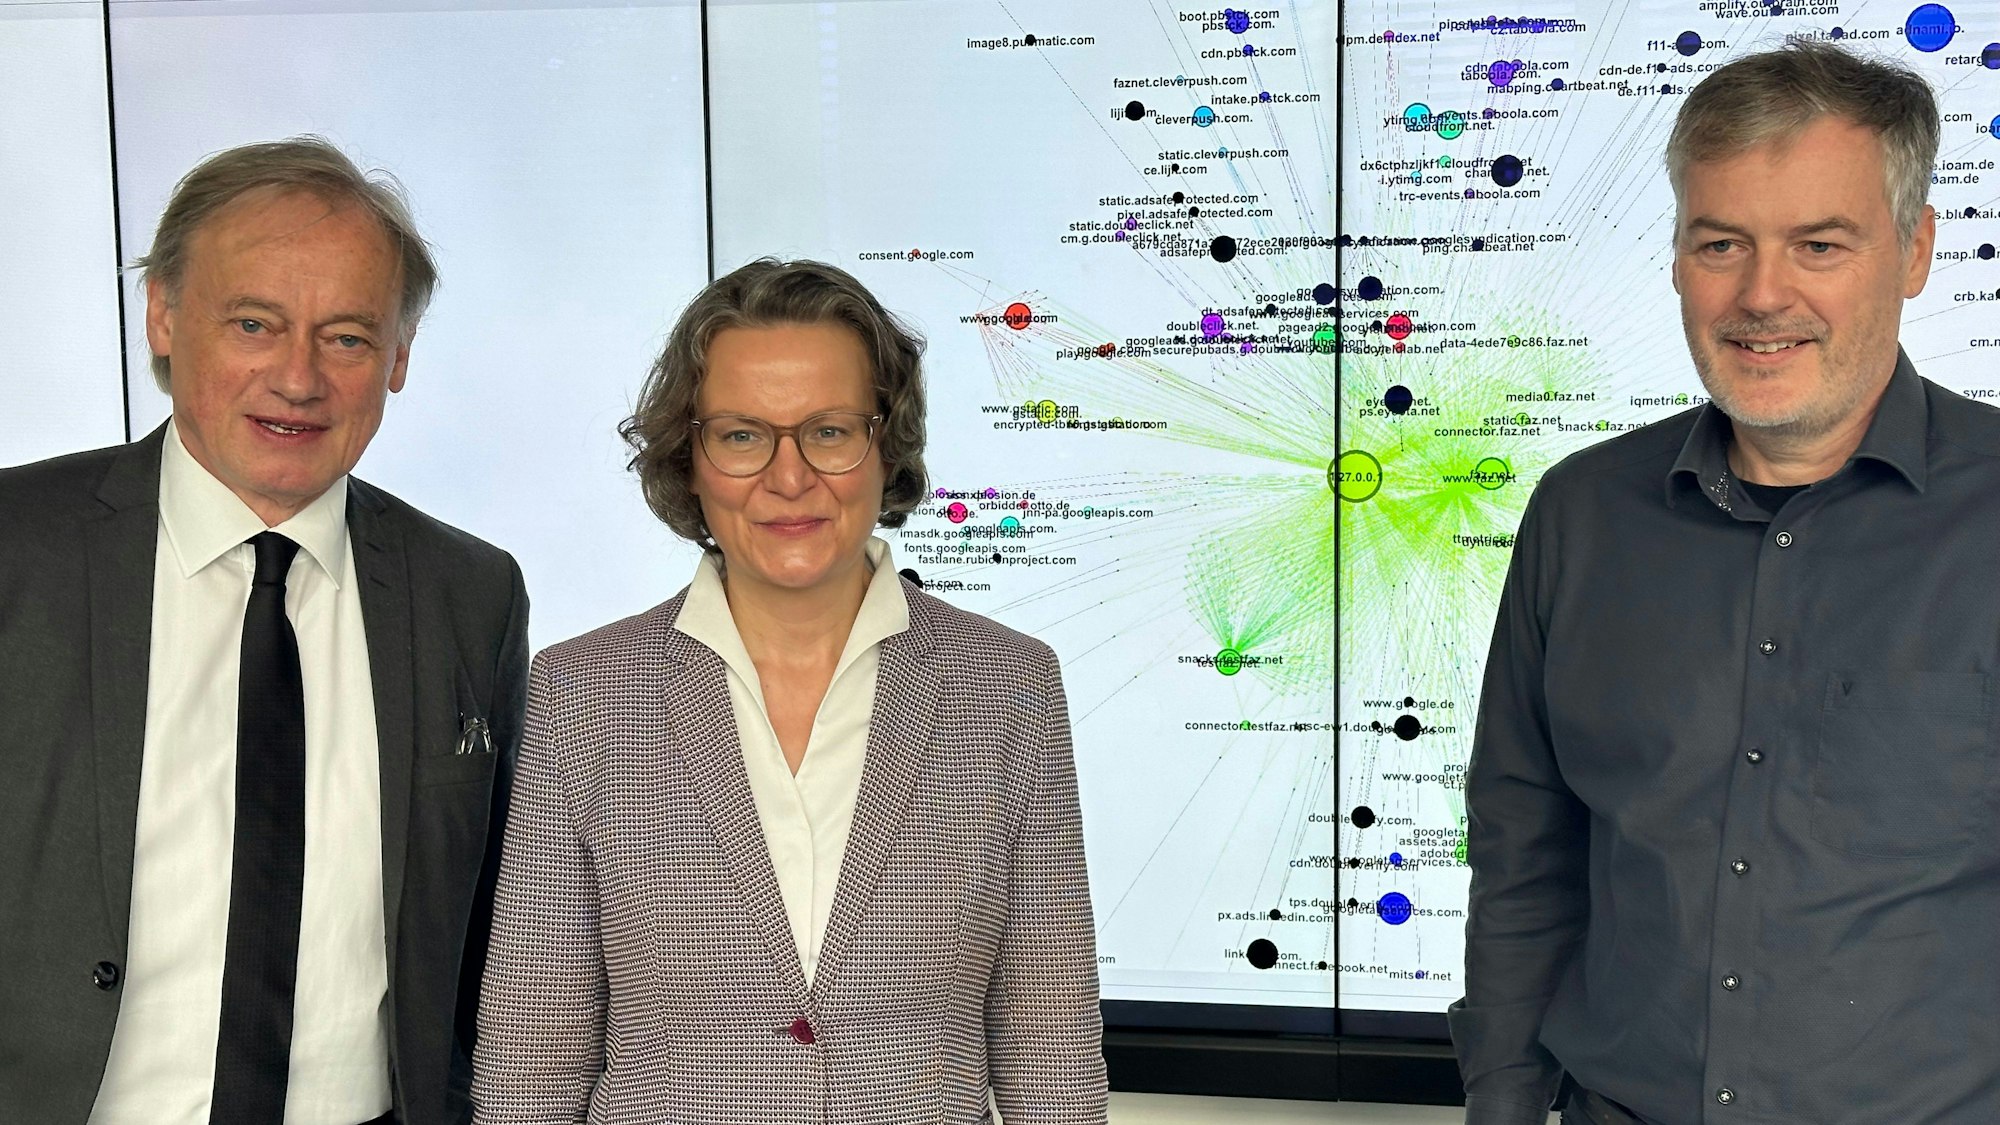 Gruppenfoto mit Ministerin Ina Scharrenbach, Hochschulpräsident Hartmut Ihne mit dunkler Krawatte und Professor André Hinkenjann, der keine Krawatte trägt.